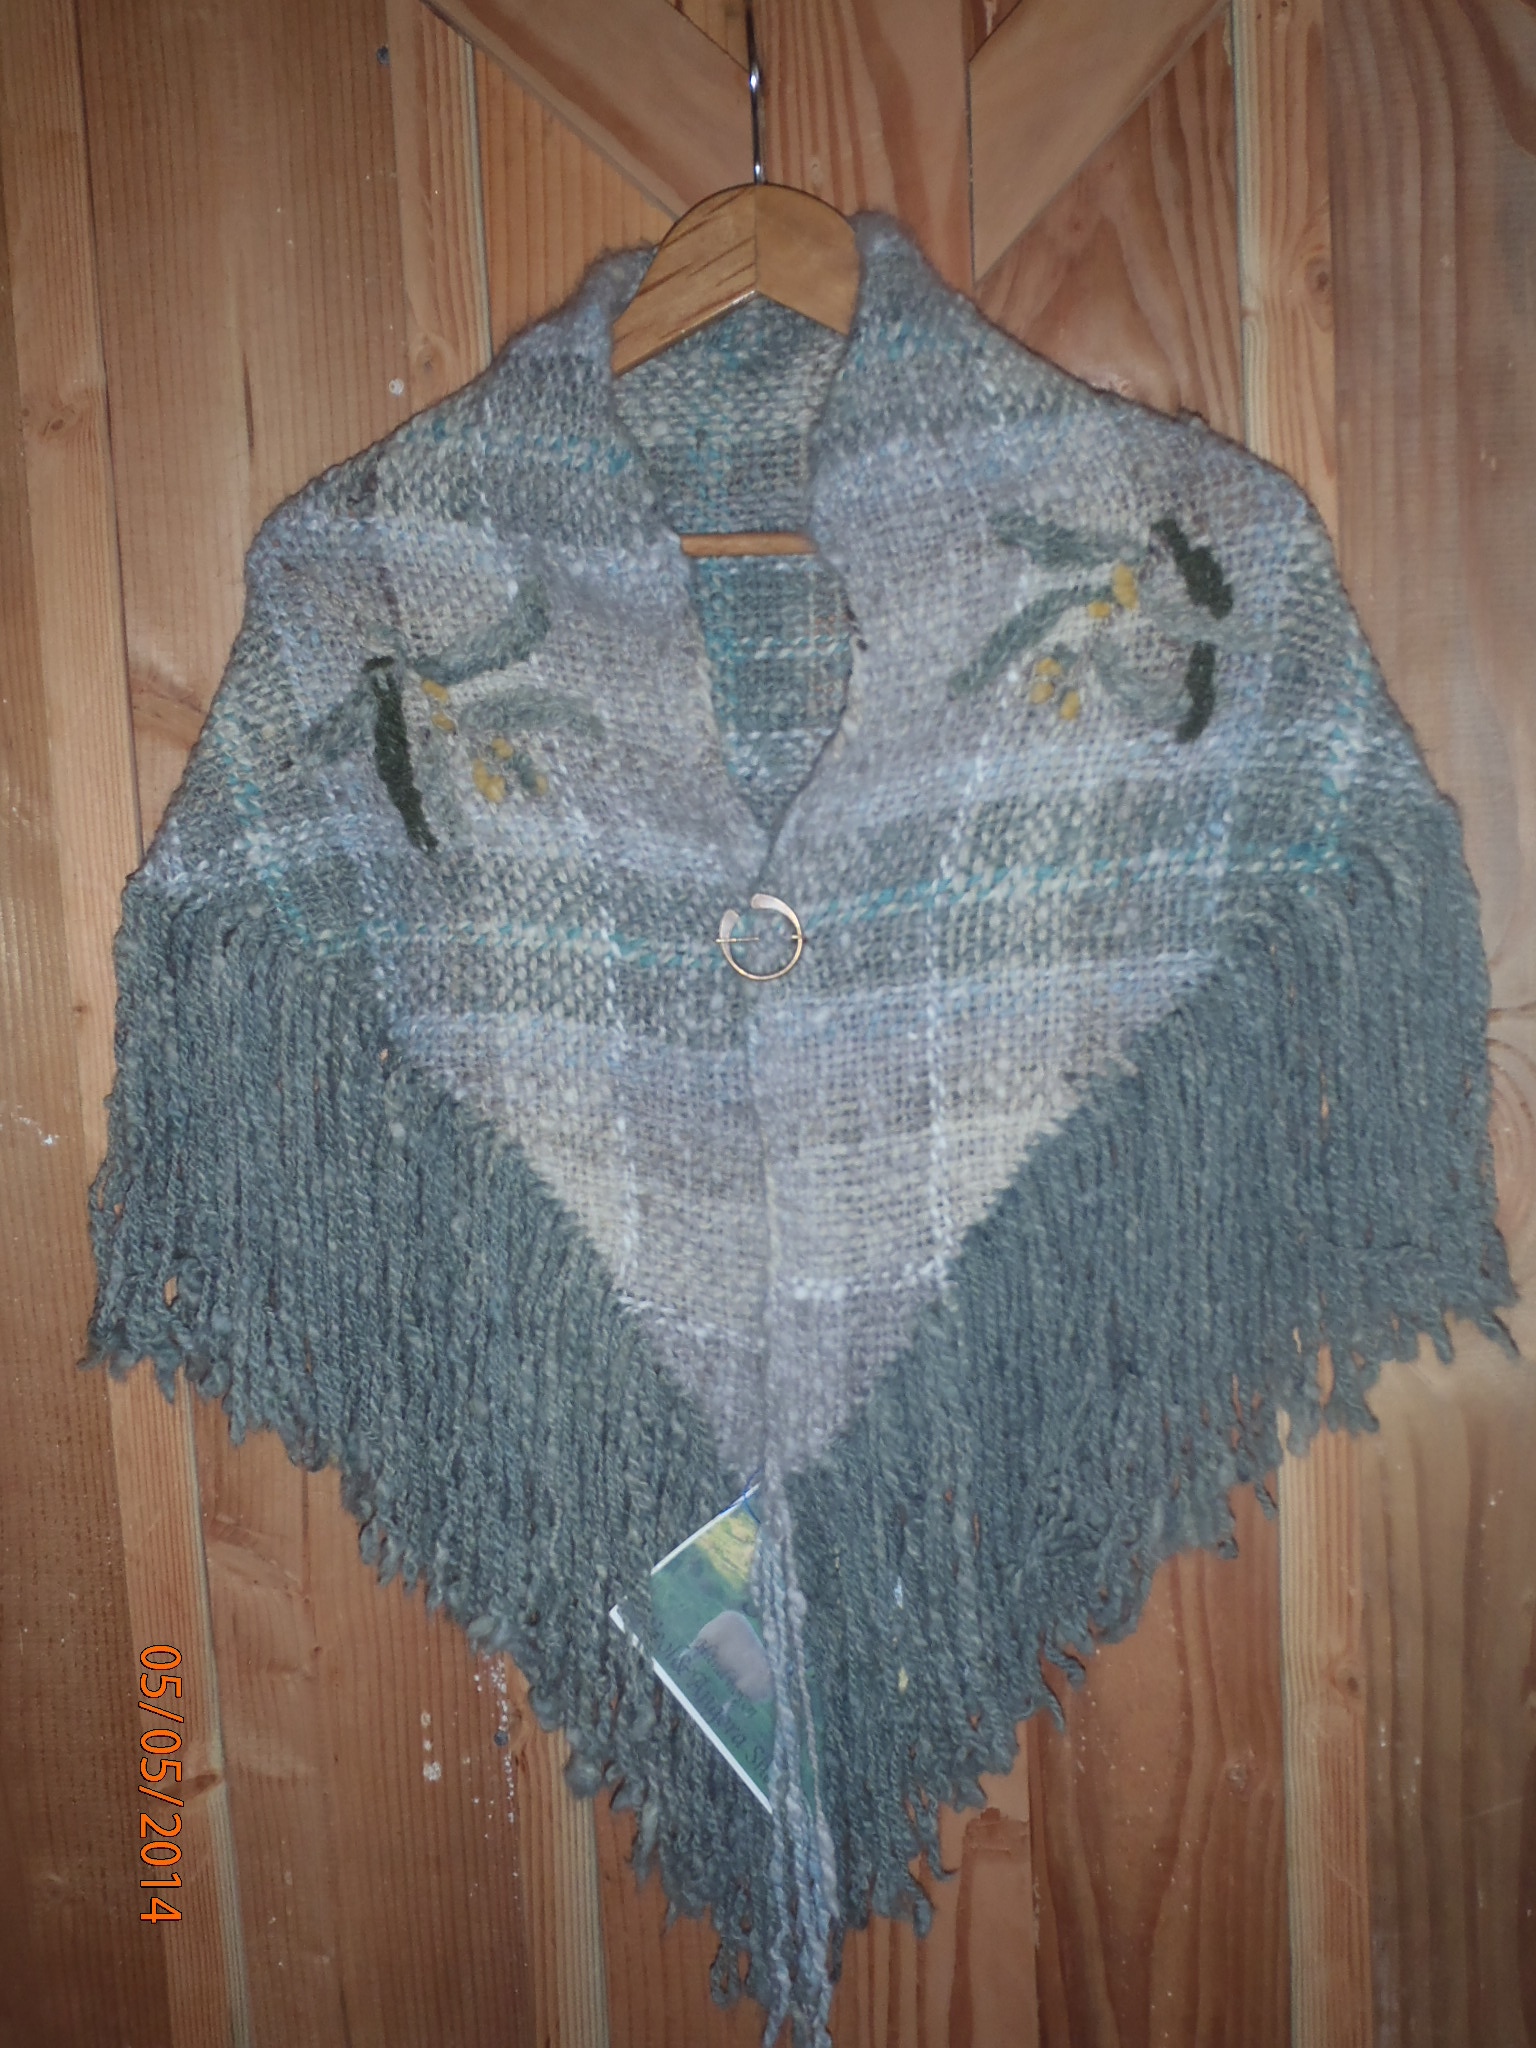 Photo of the Koa shawl.